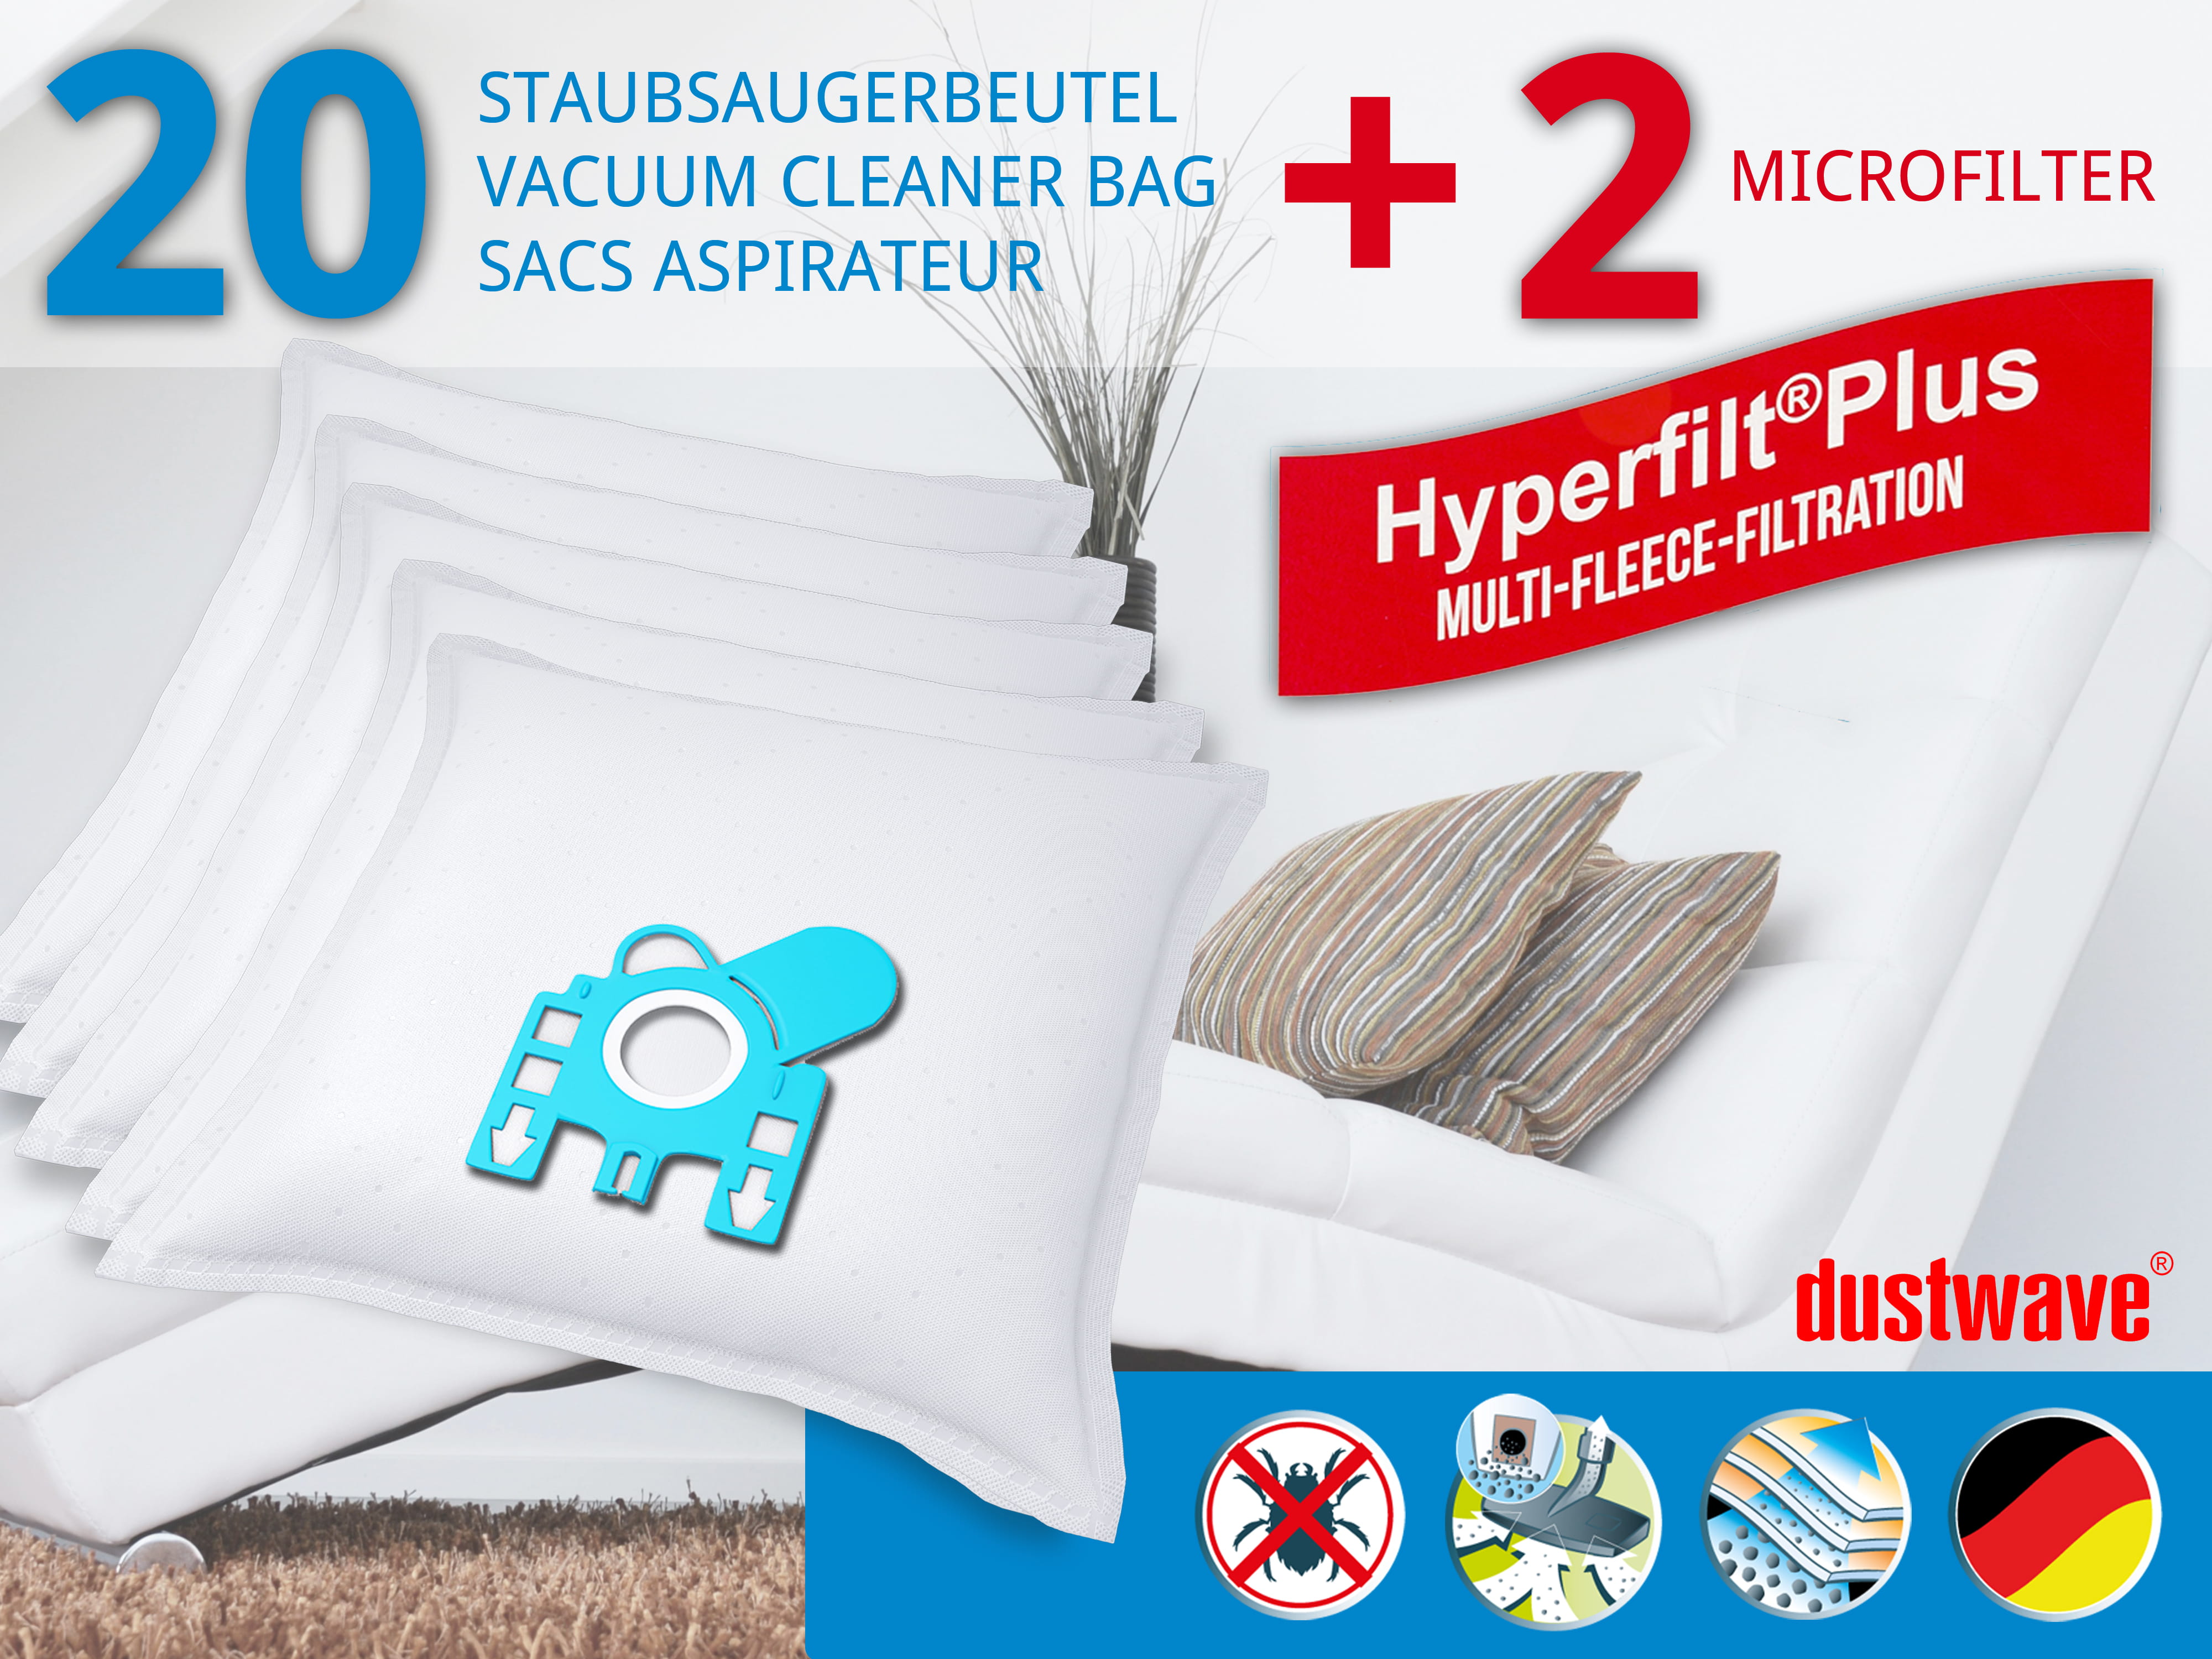 Dustwave® 20 Staubsaugerbeutel für Miele S6390 / S 6390 - hocheffizient, mehrlagiges Mikrovlies mit Hygieneverschluss - Made in Germany